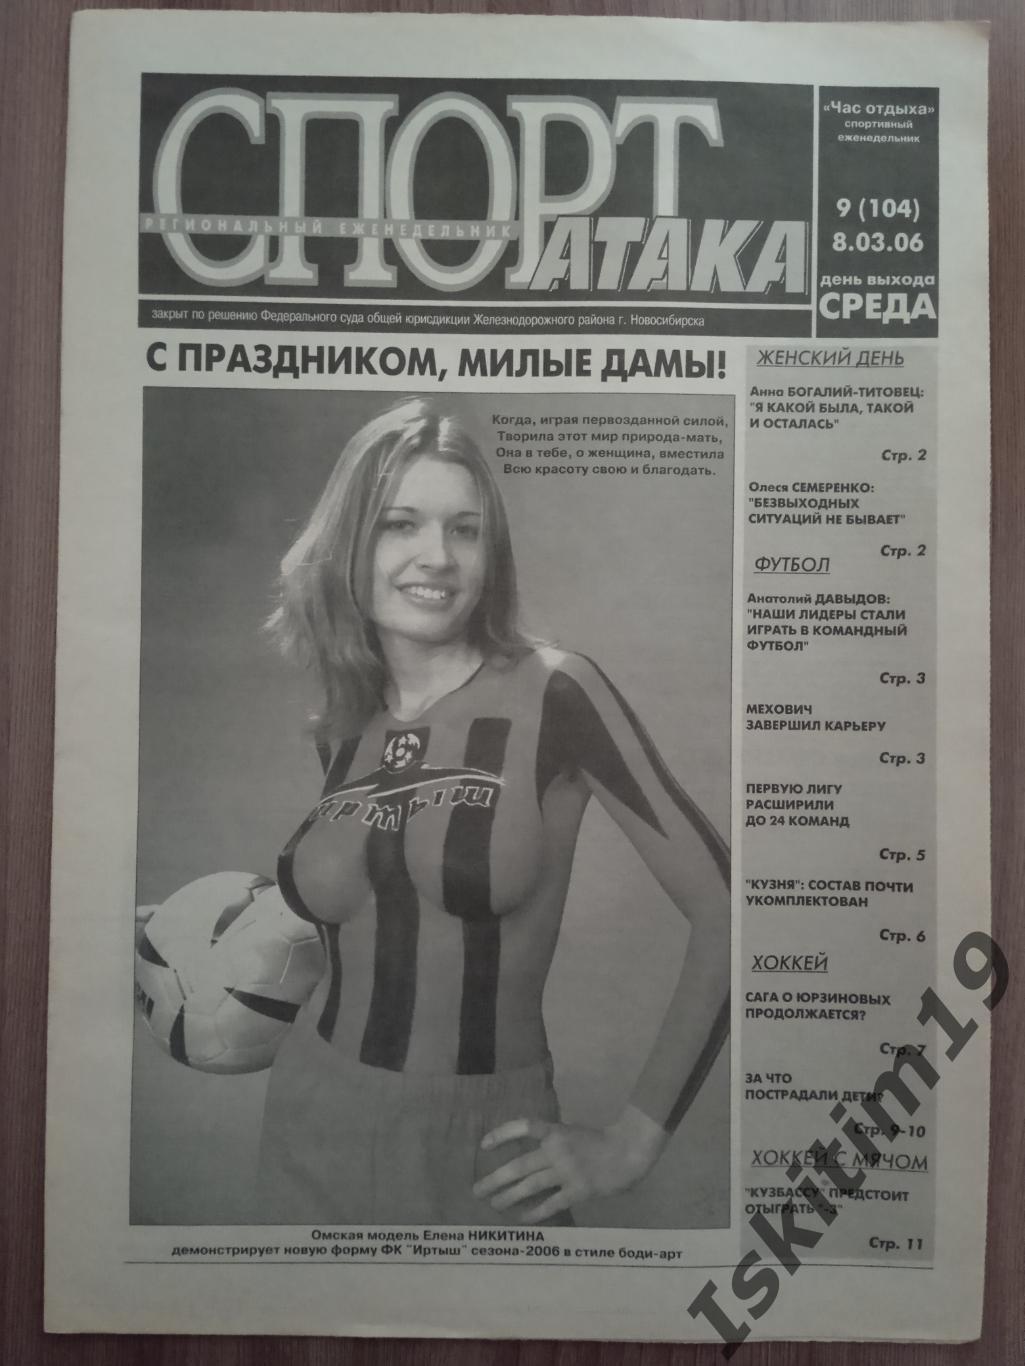 Новосибирский еженедельник (Час отдыха) Спорт-Атака 08.03.2006 № 9